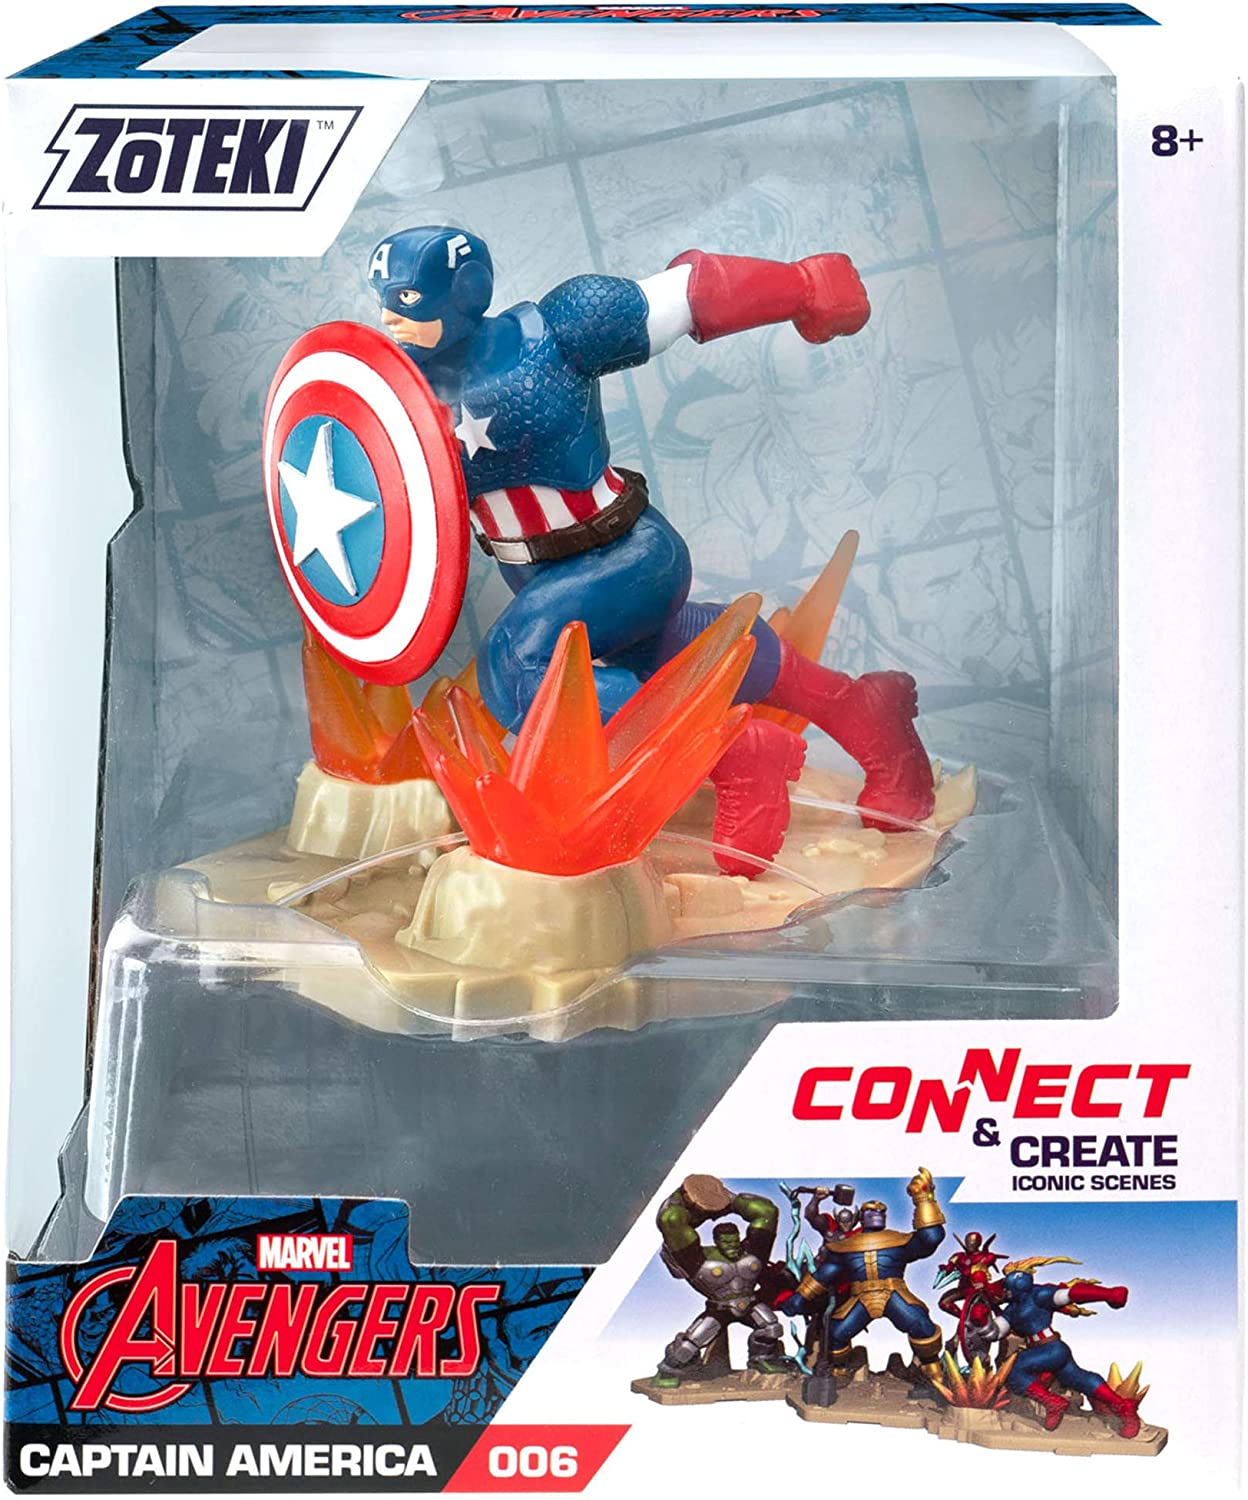 zoteki General Captain America Avengers Zoteki Series 1 Figures Asst